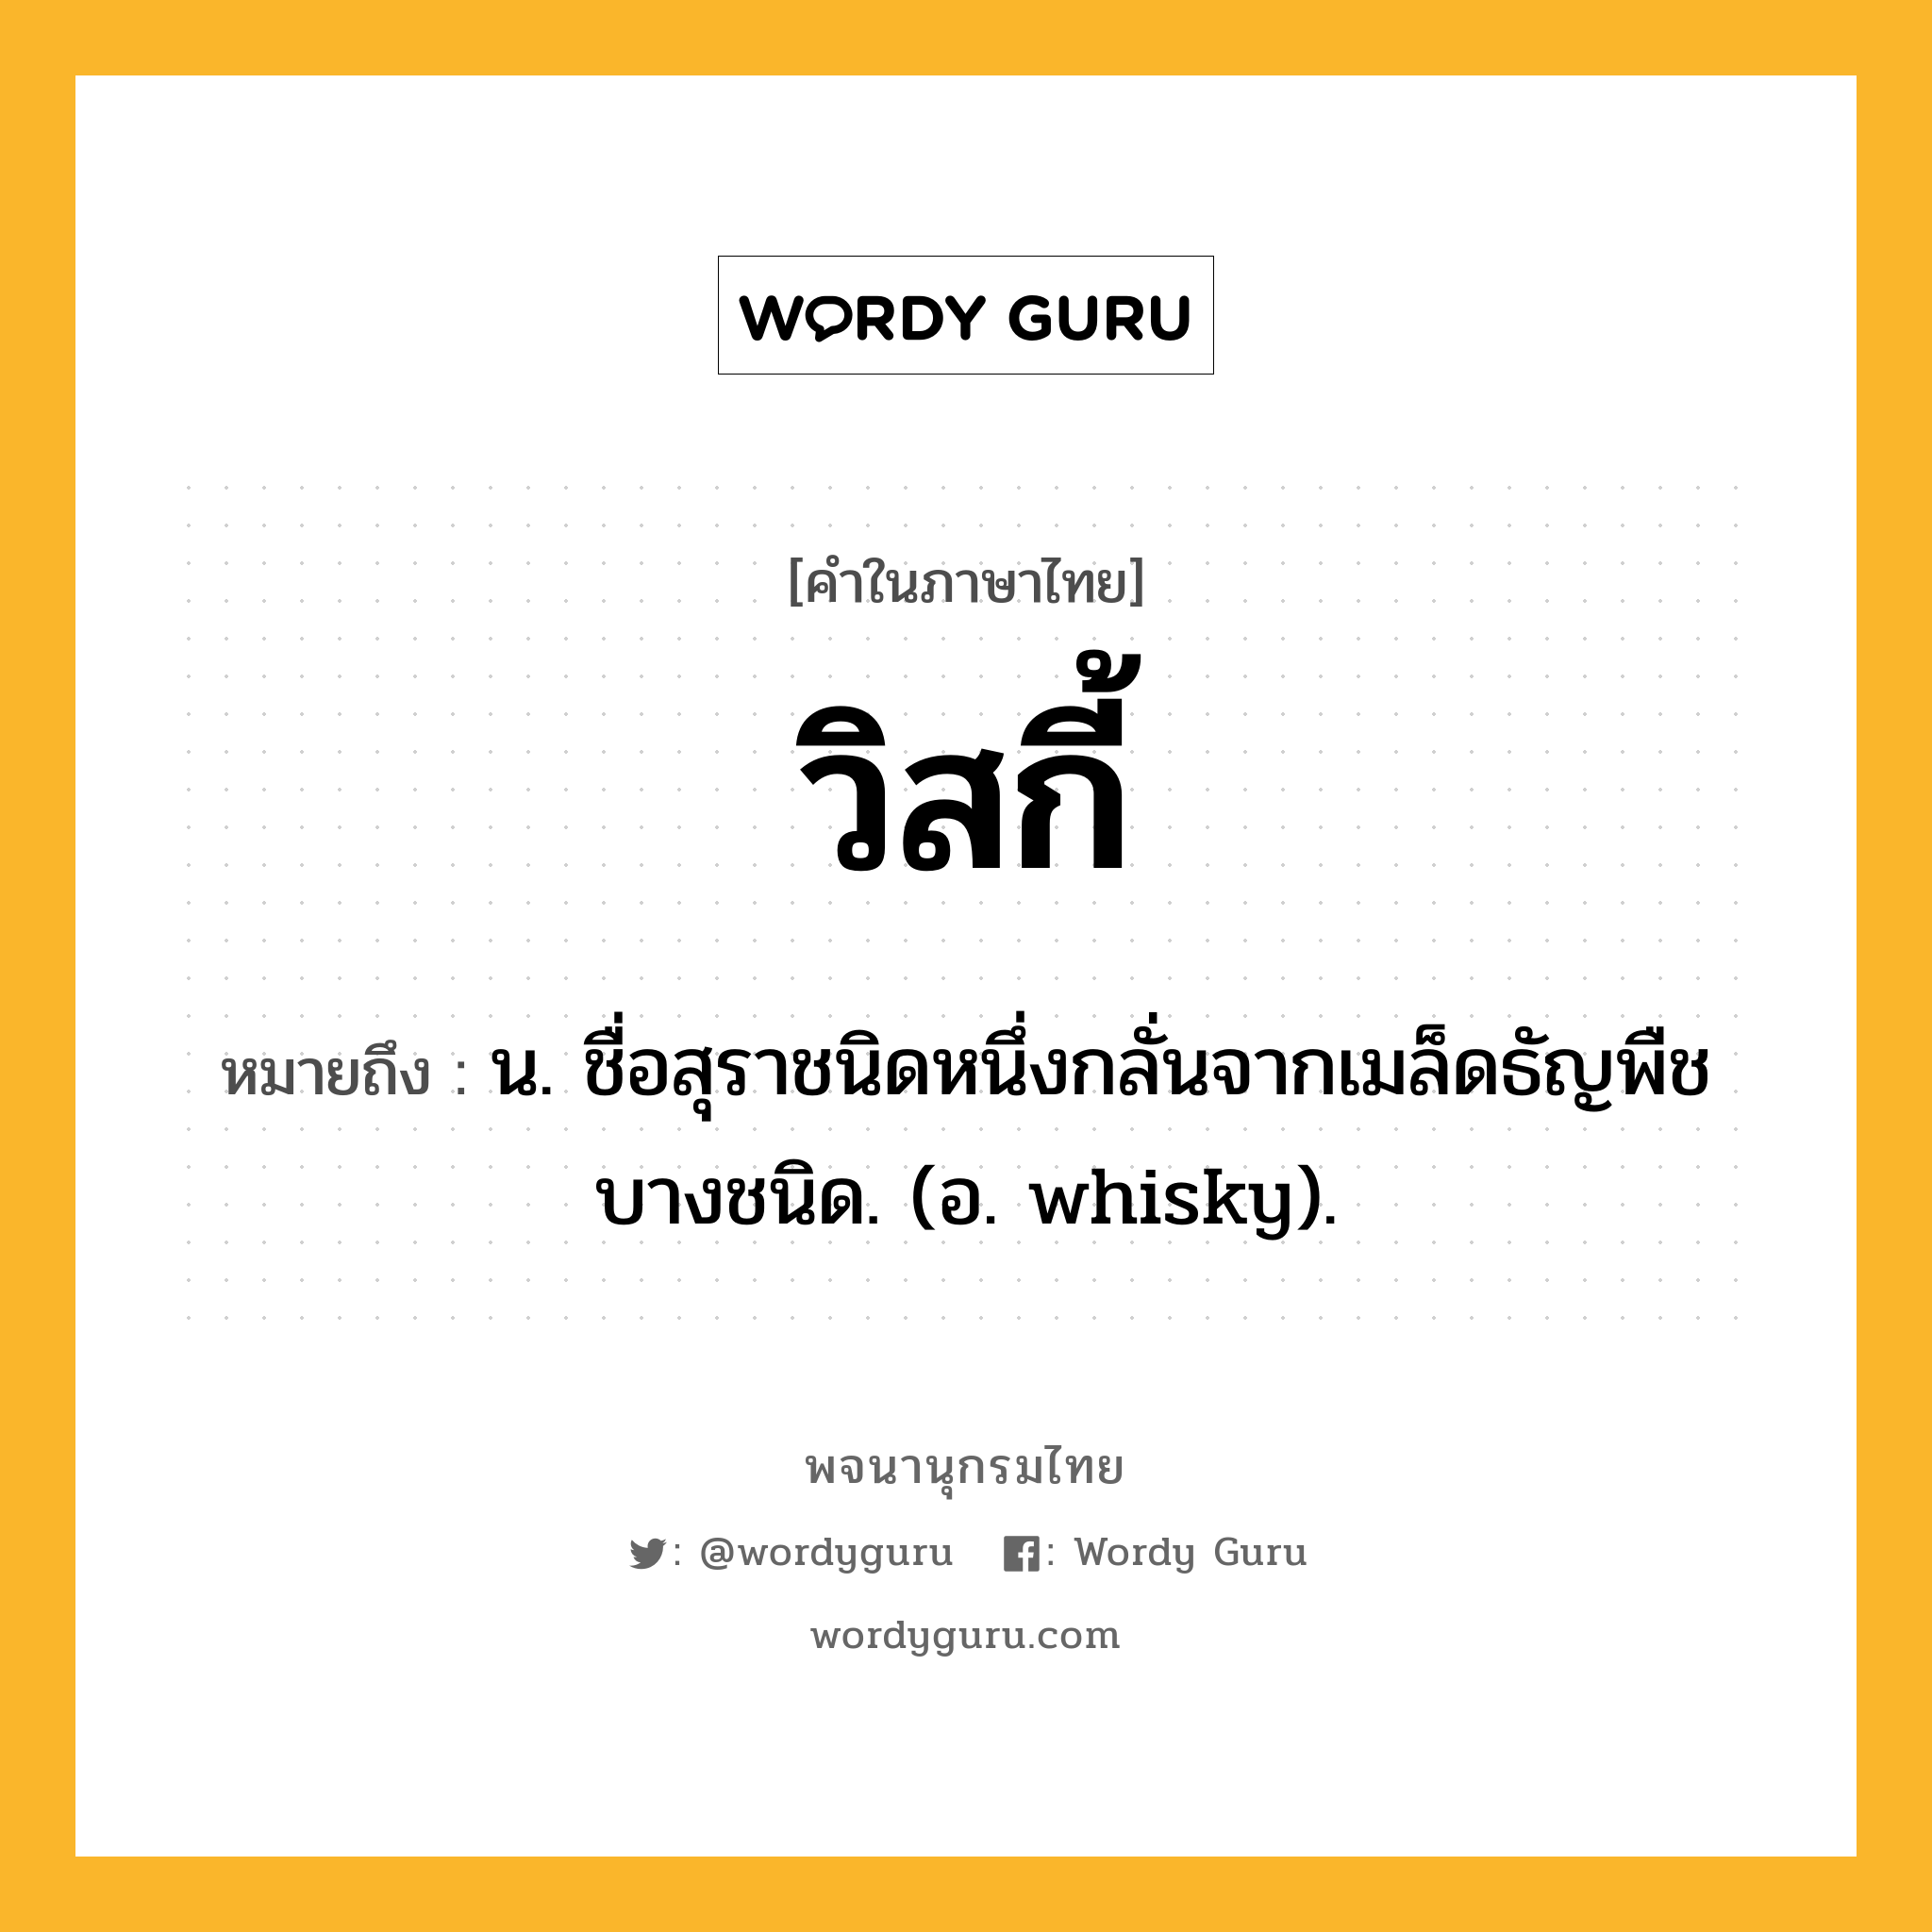 วิสกี้ หมายถึงอะไร?, คำในภาษาไทย วิสกี้ หมายถึง น. ชื่อสุราชนิดหนึ่งกลั่นจากเมล็ดธัญพืชบางชนิด. (อ. whisky).